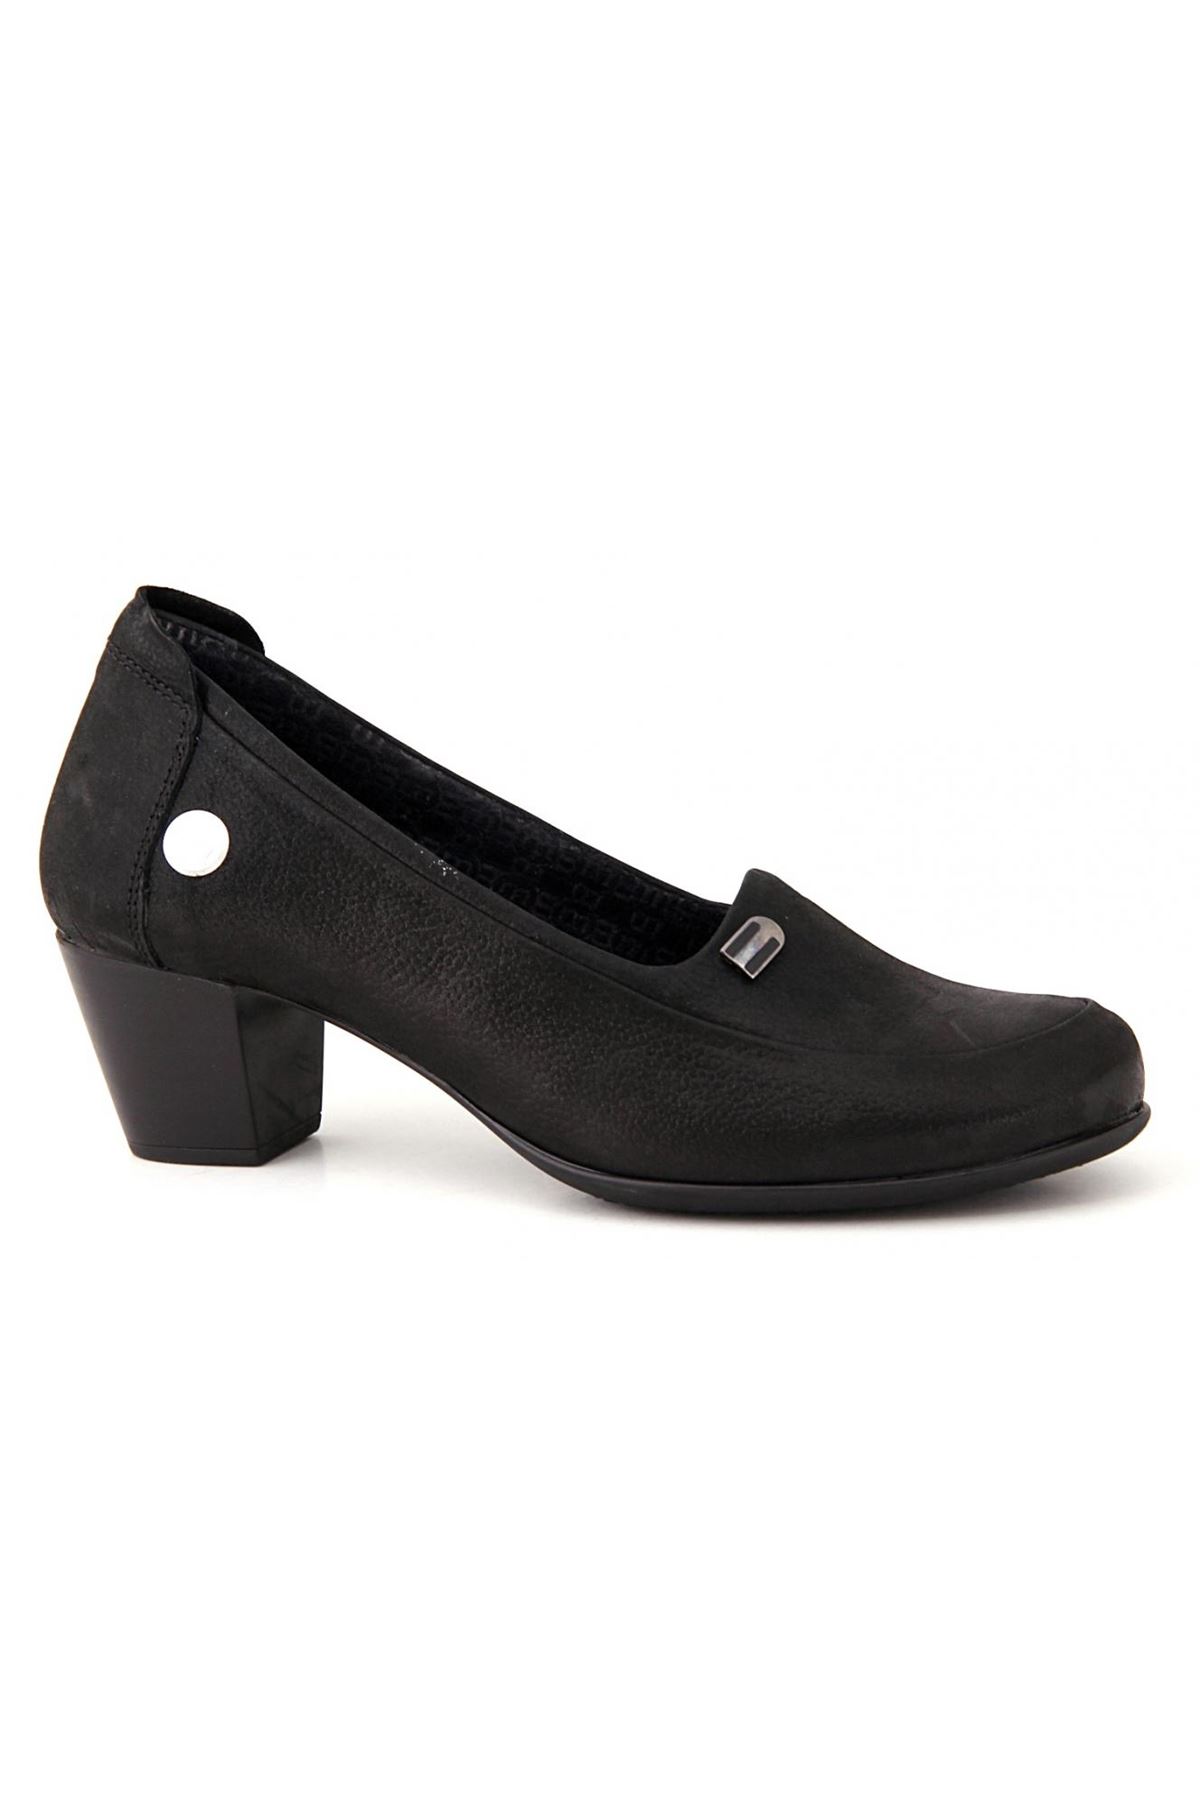 D19KA-525 Mammamia Günlük Bayan Ayakkabı - Siyah Jale